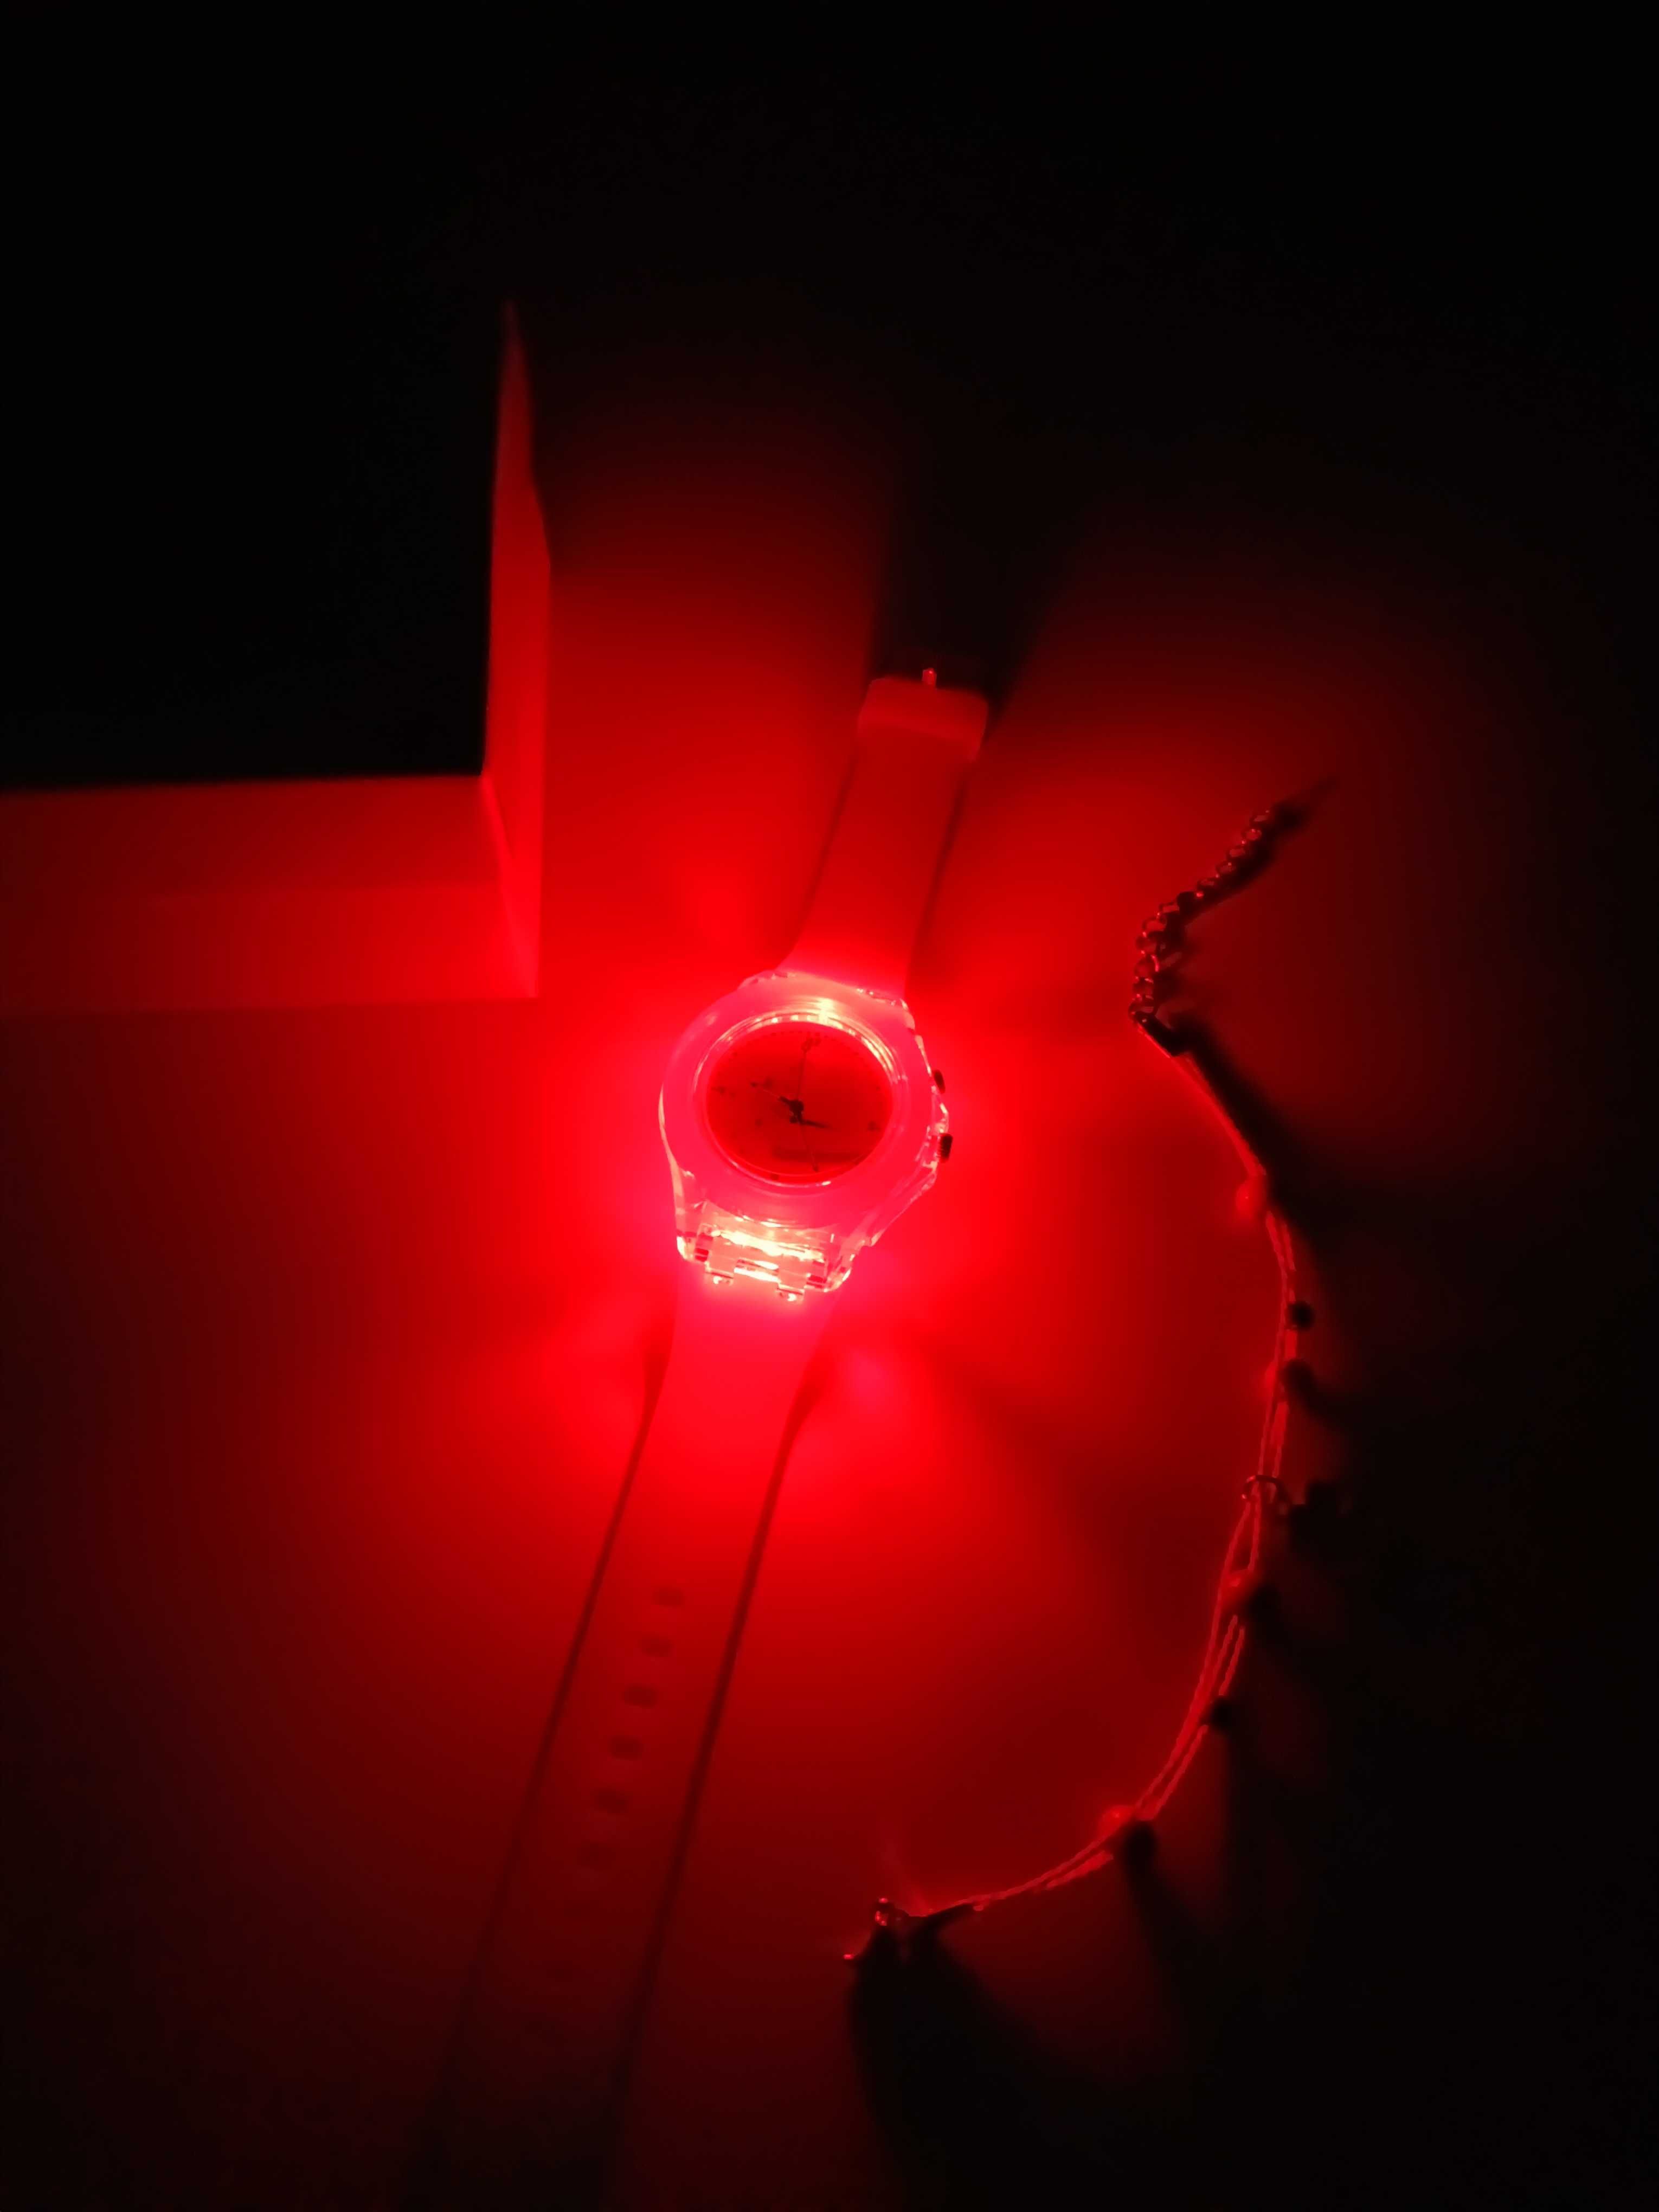 Nowy świecący różowy zegarek dziewczęcy LED + bransoletka na Prezent